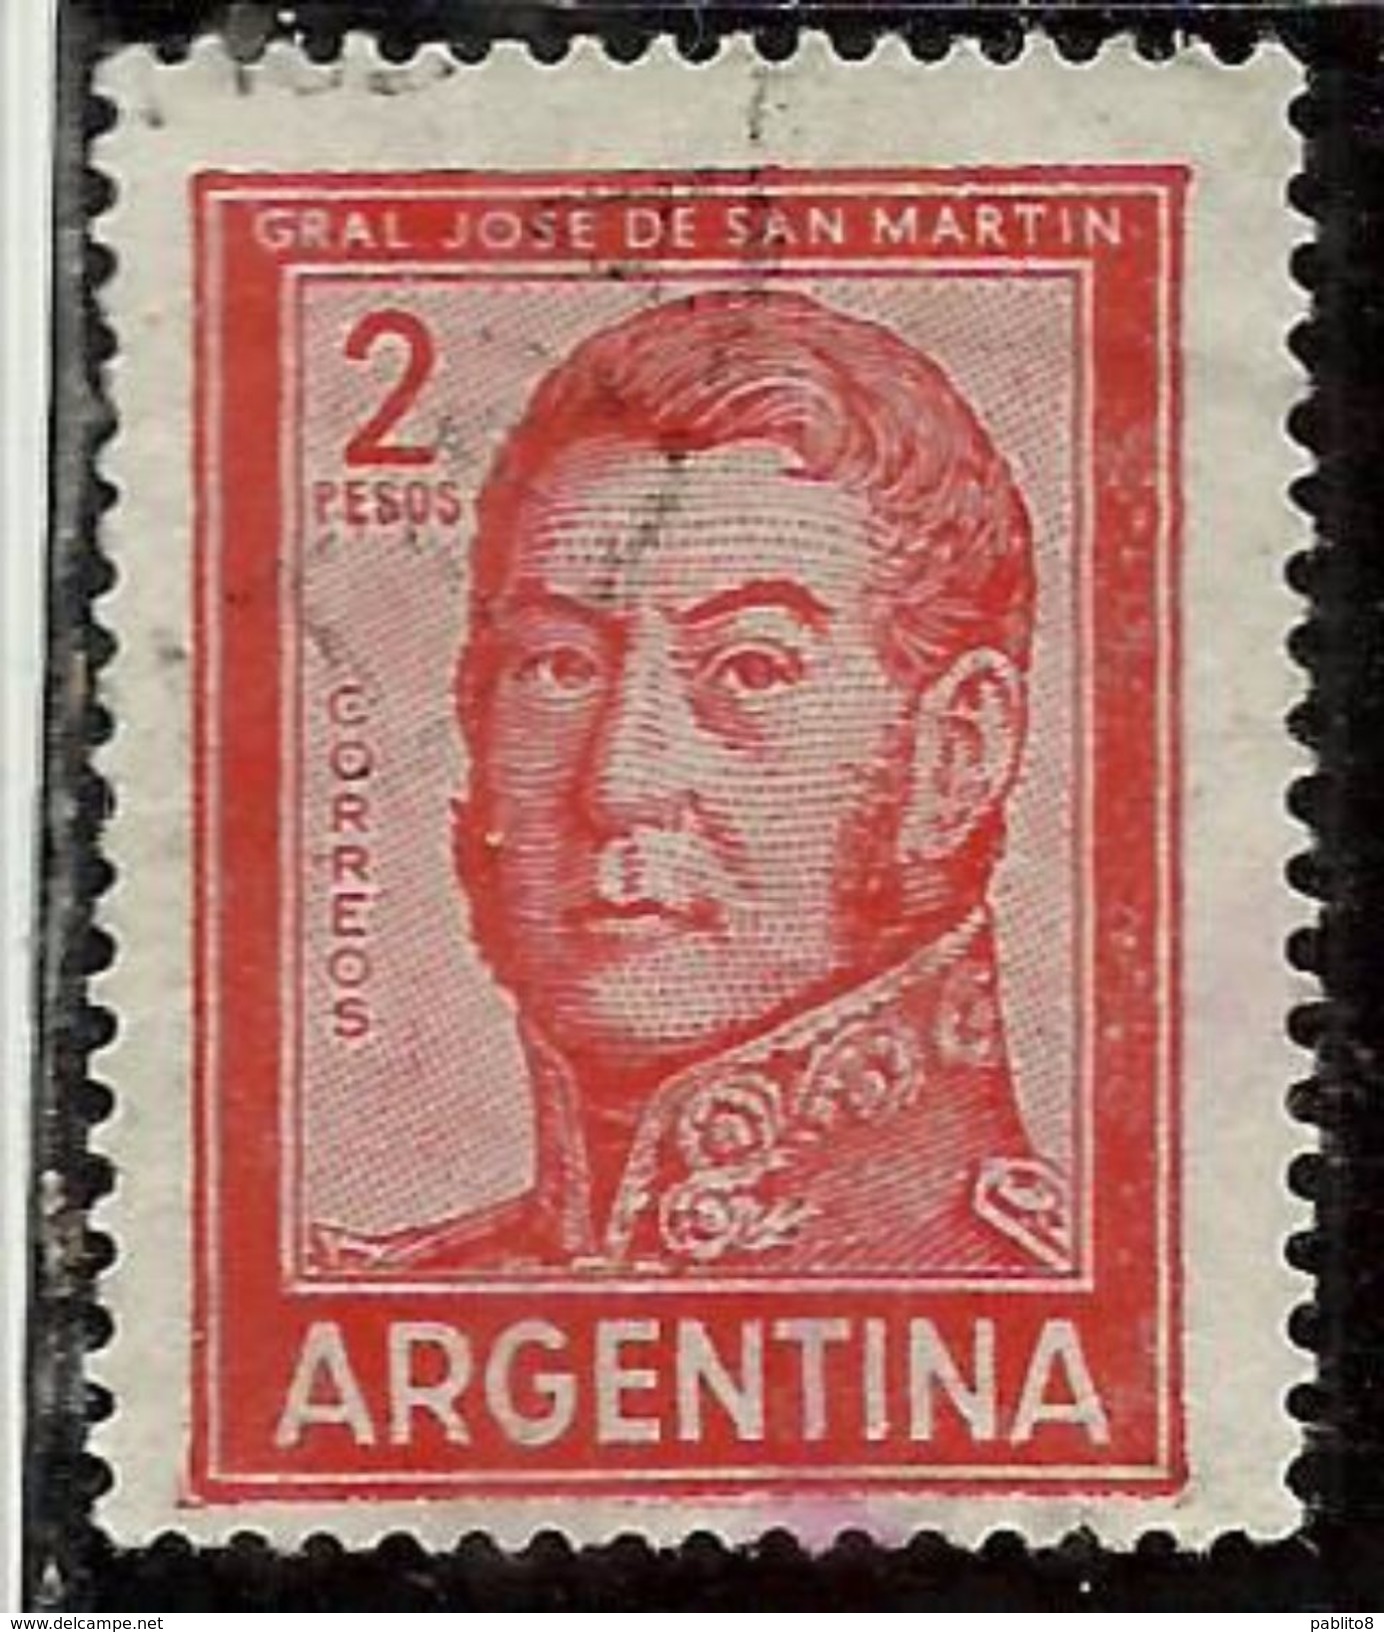 ARGENTINA 1959 1970 1961 JOSE DE SAN MARTIN 2p USATO USED OBLITERE' - Usati